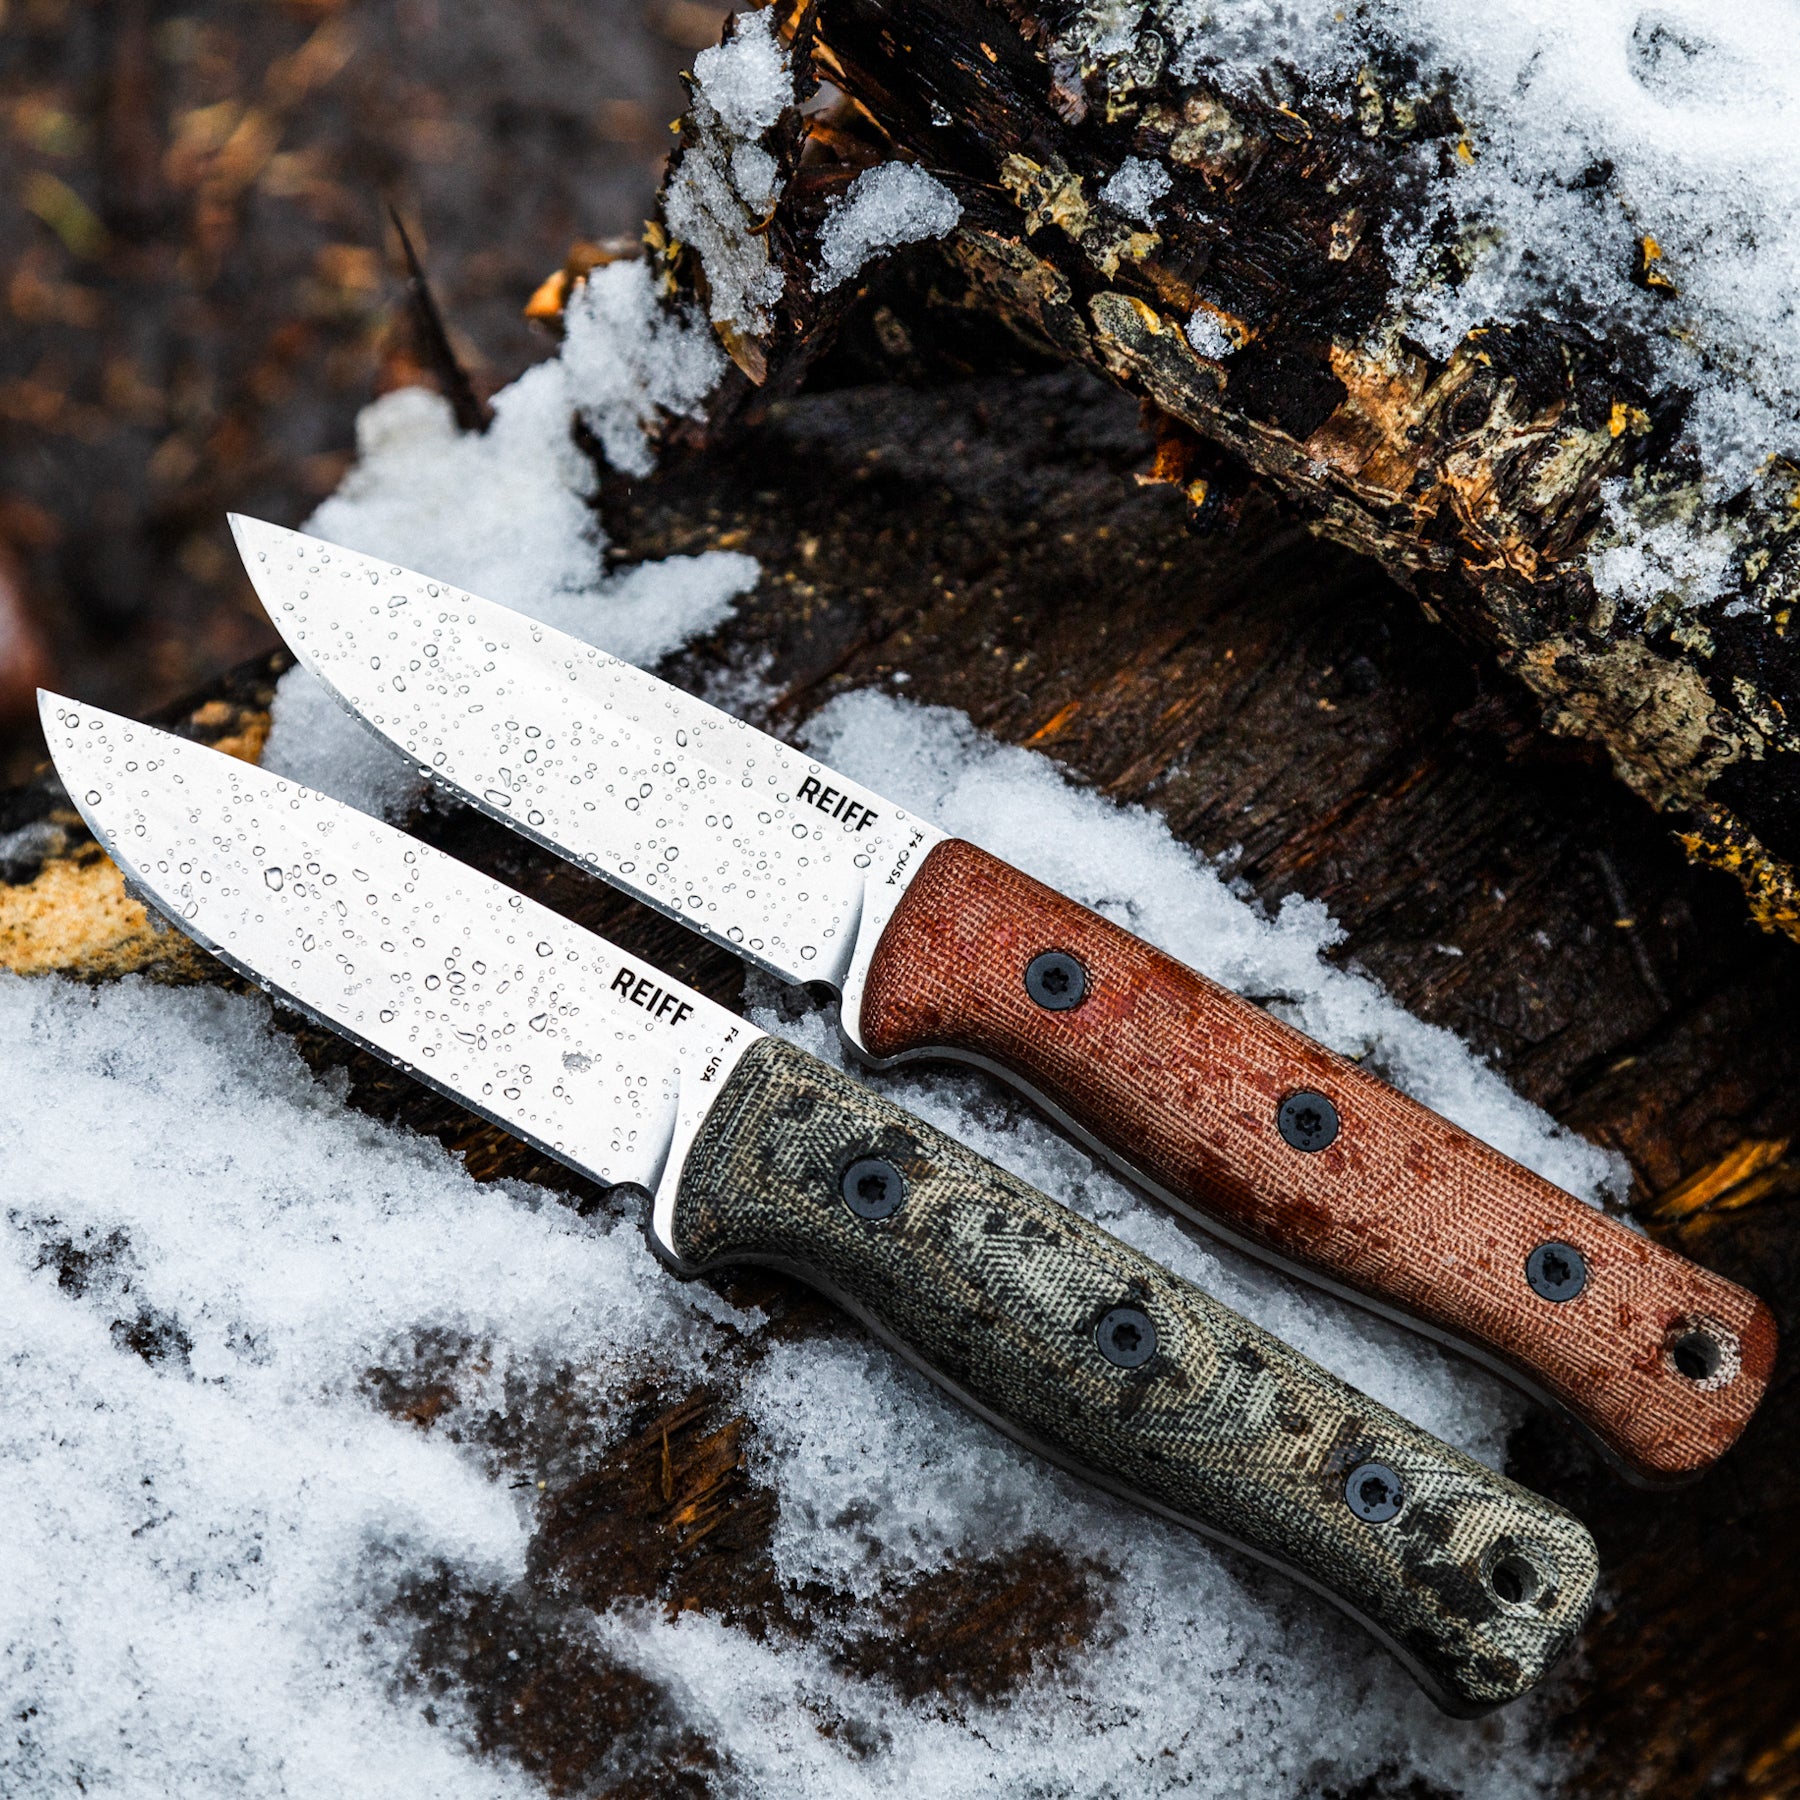 F4 Bushcraft Survival Knife - Reiff Knives